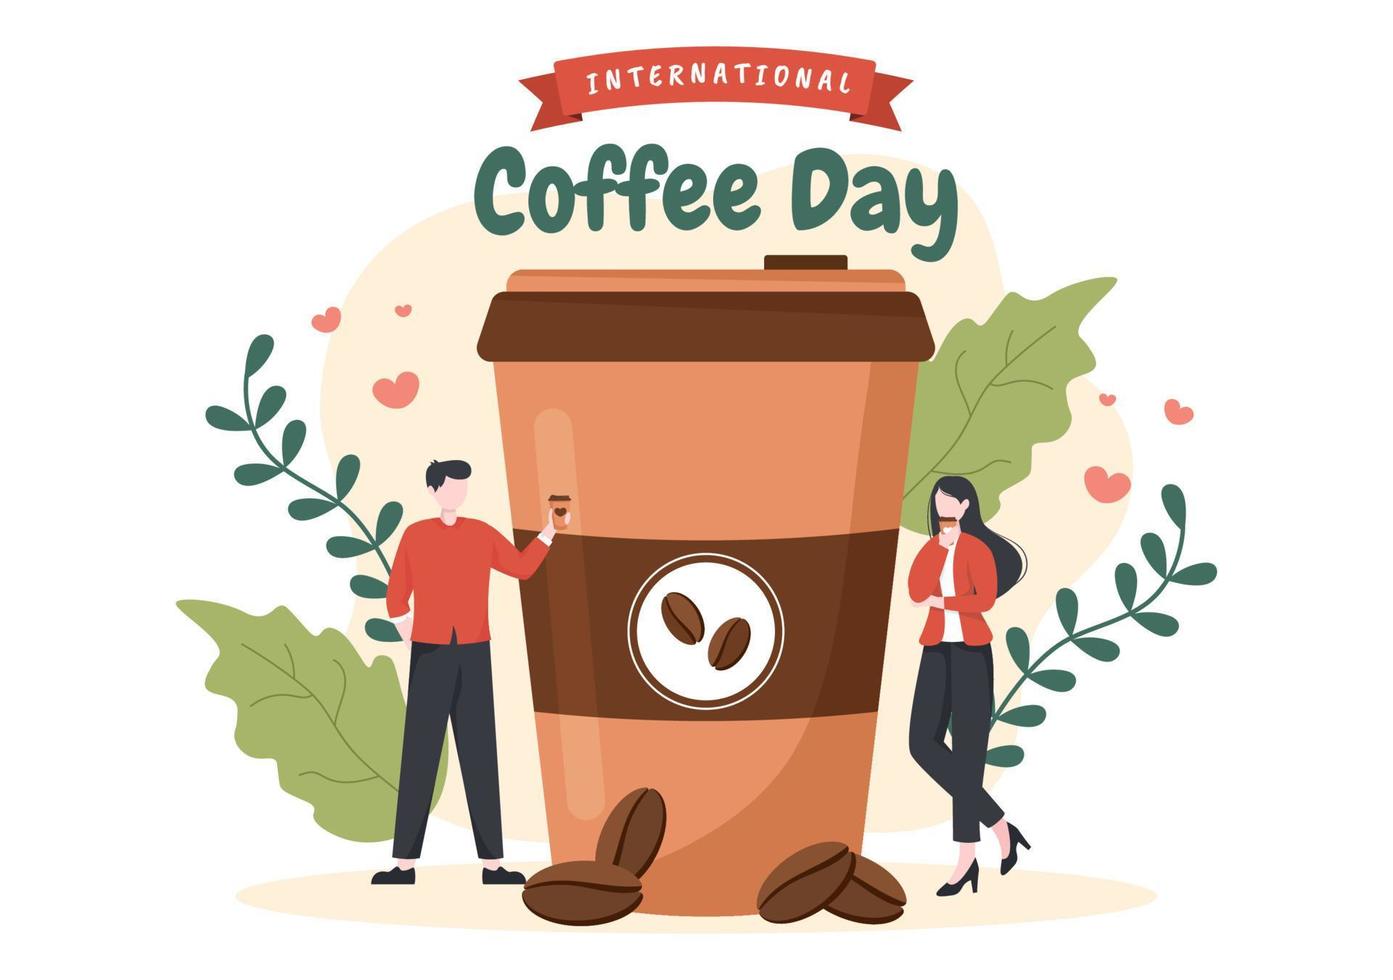 internationaler kaffeetag am 1. oktober flache karikaturillustration hand gezeichnet mit kakaobohnen und leuten, die eine tasse im café trinken vektor